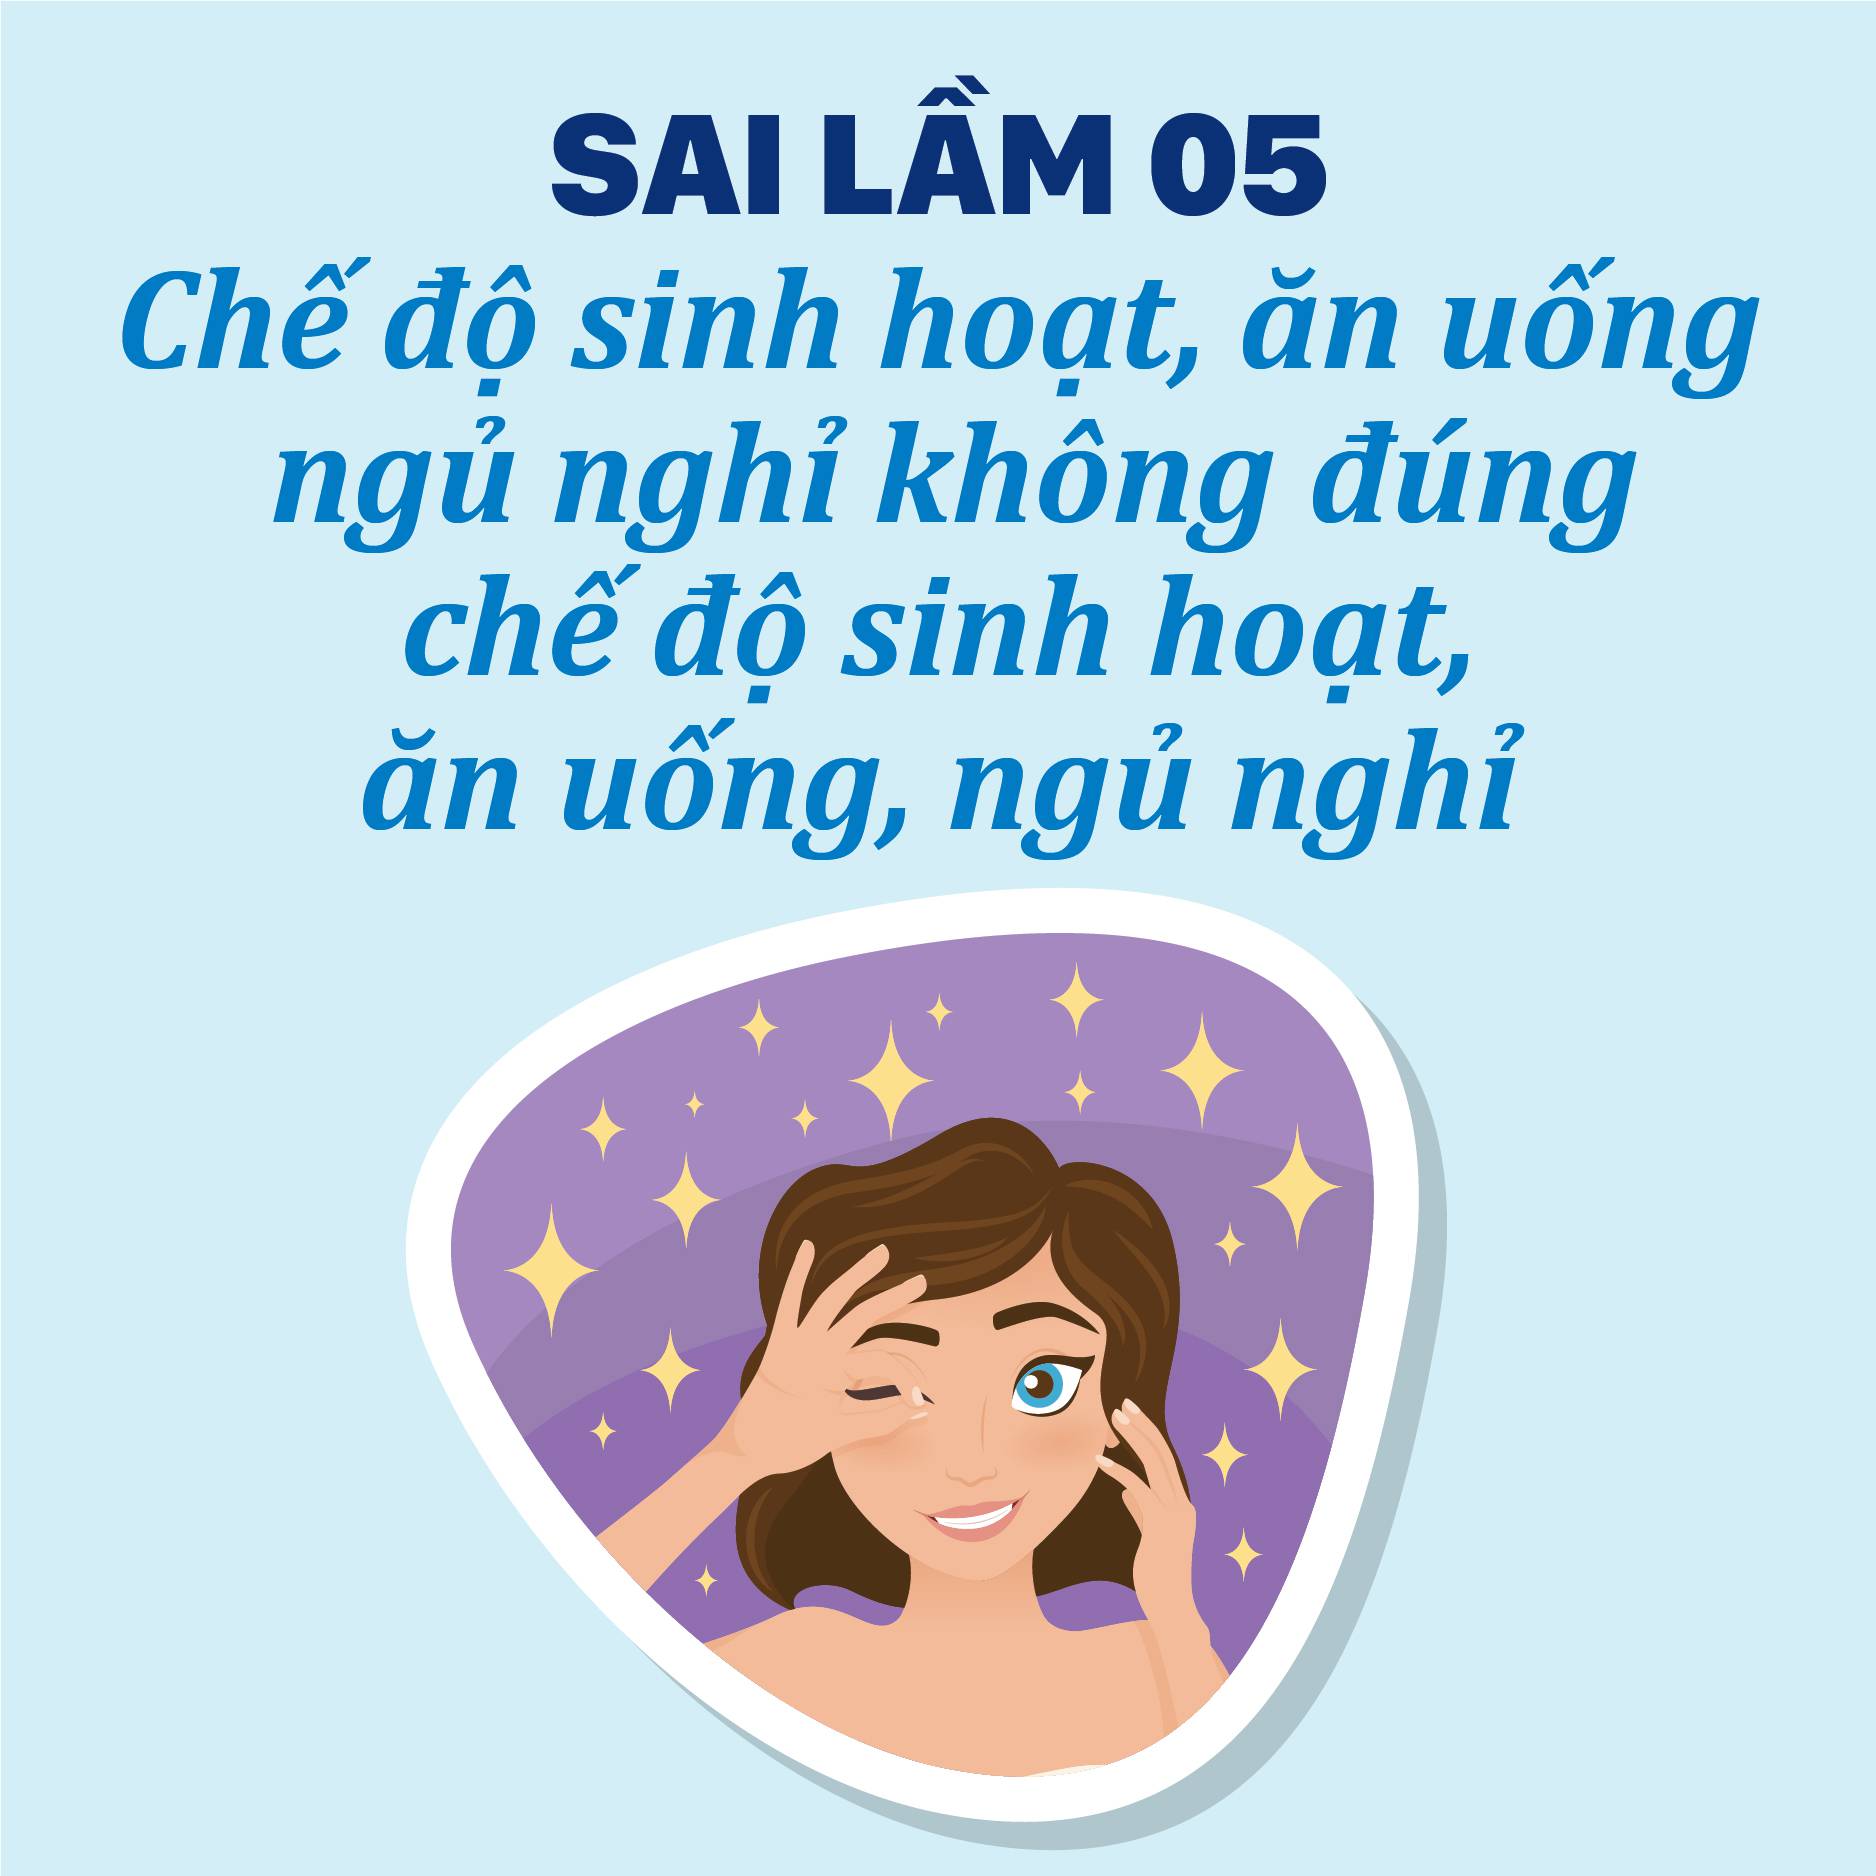 Sai lầm 05: CHẾ ĐỘ SINH HOẠT, ĂN UỐNG- NGỦ NGHỈ KHÔNG ĐÚNG 1